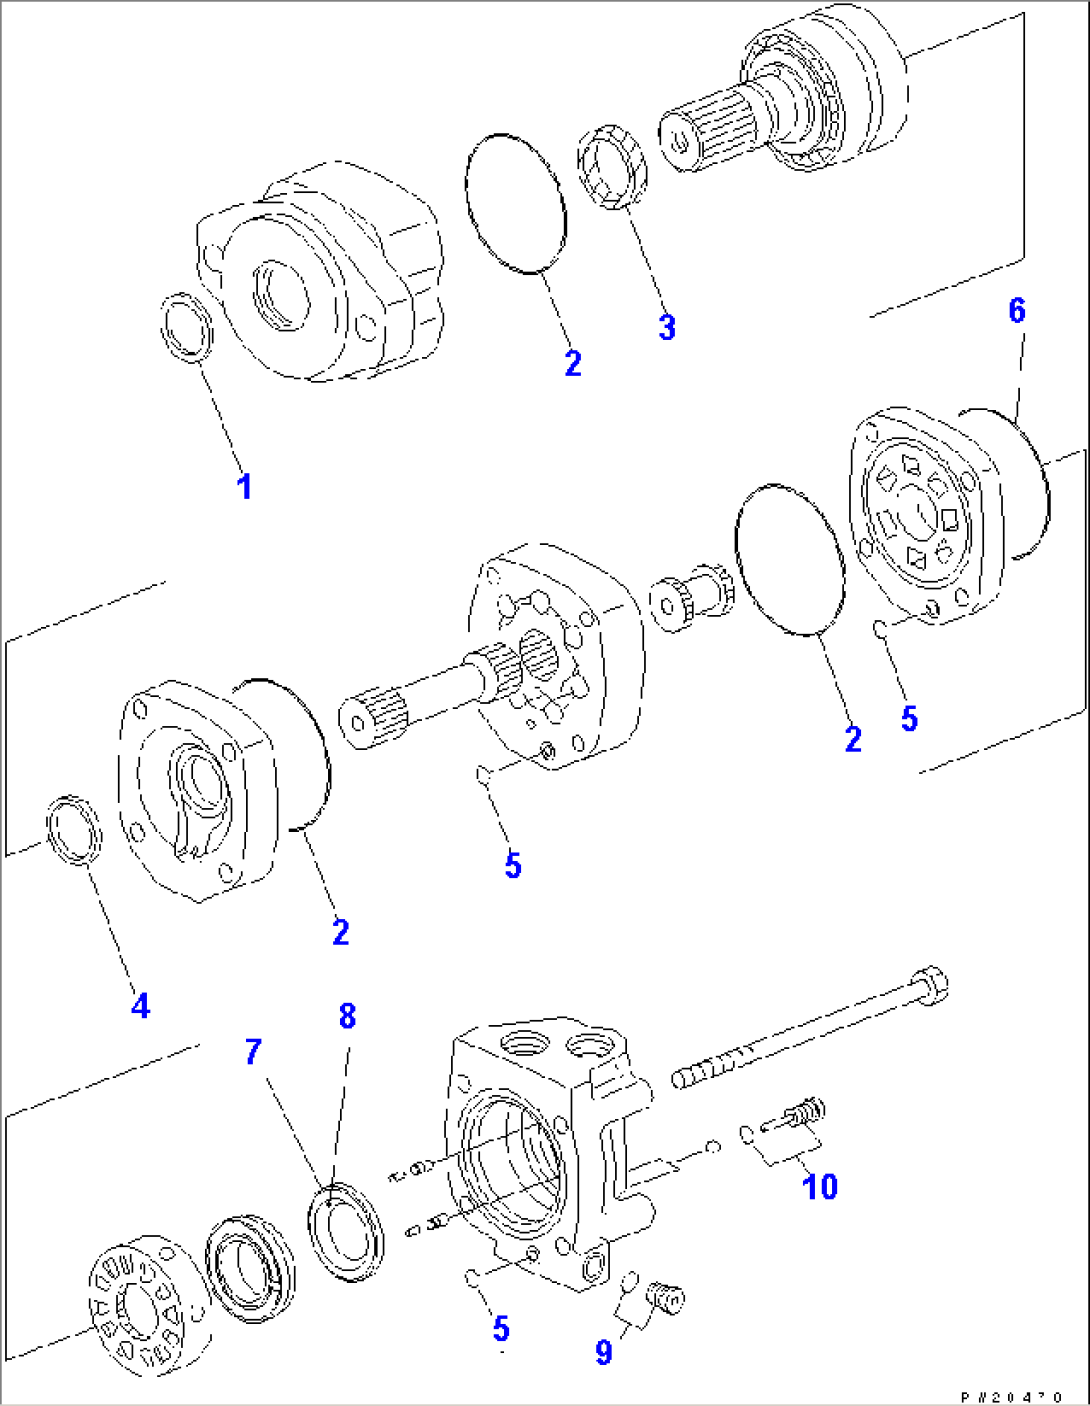 CONVEYOR MOTOR (2-125AS2S TYPE) (INNER PARTS)